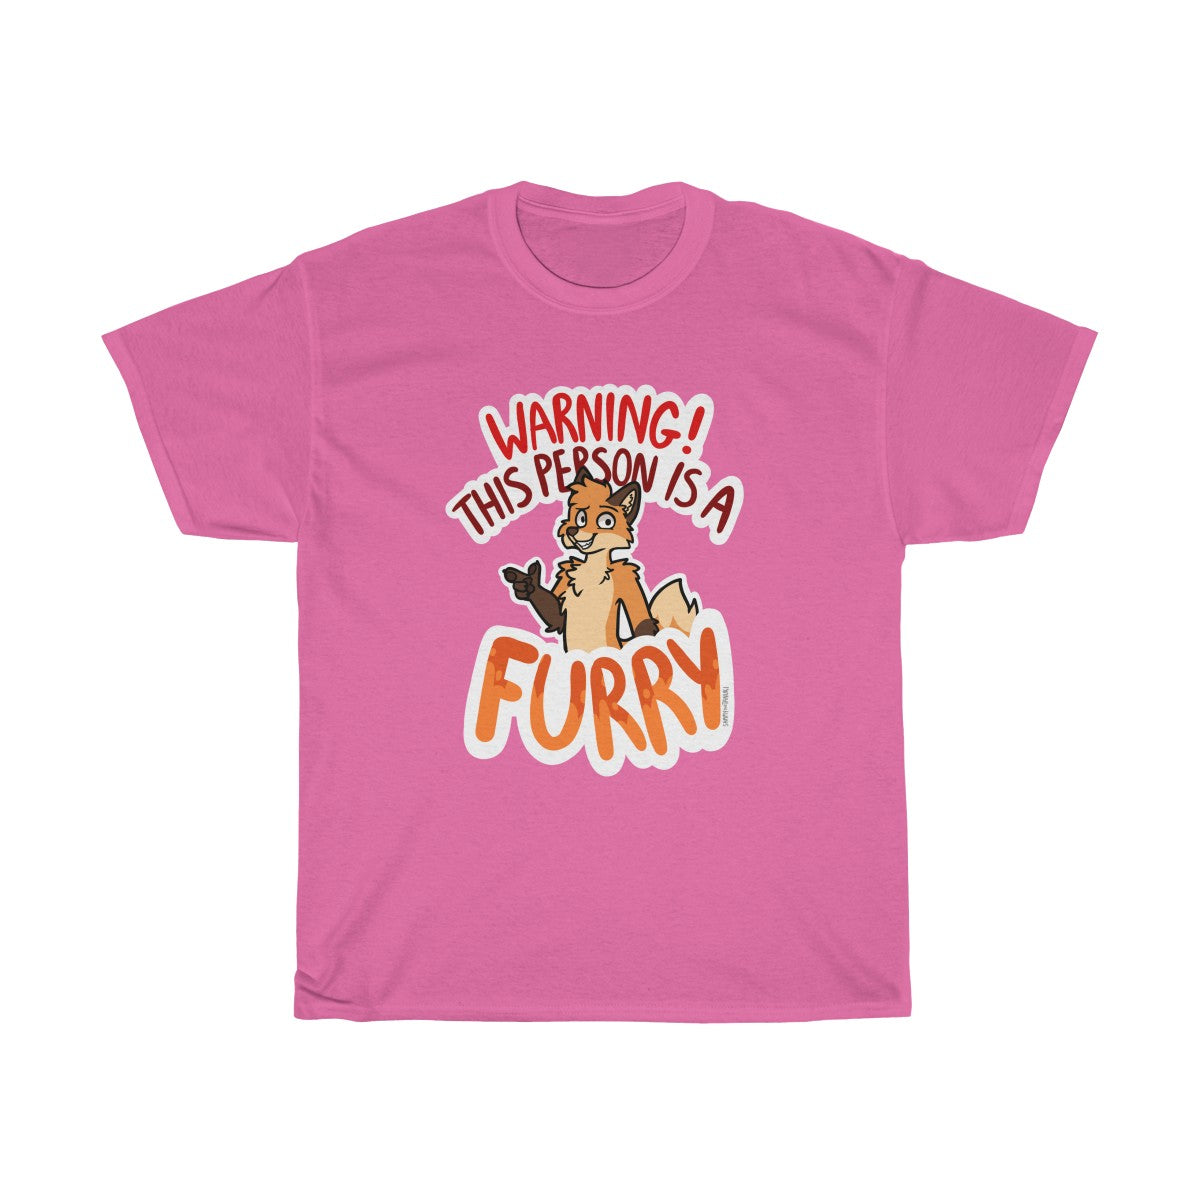 Orange Fox - T-Shirt T-Shirt Sammy The Tanuki Pink S 